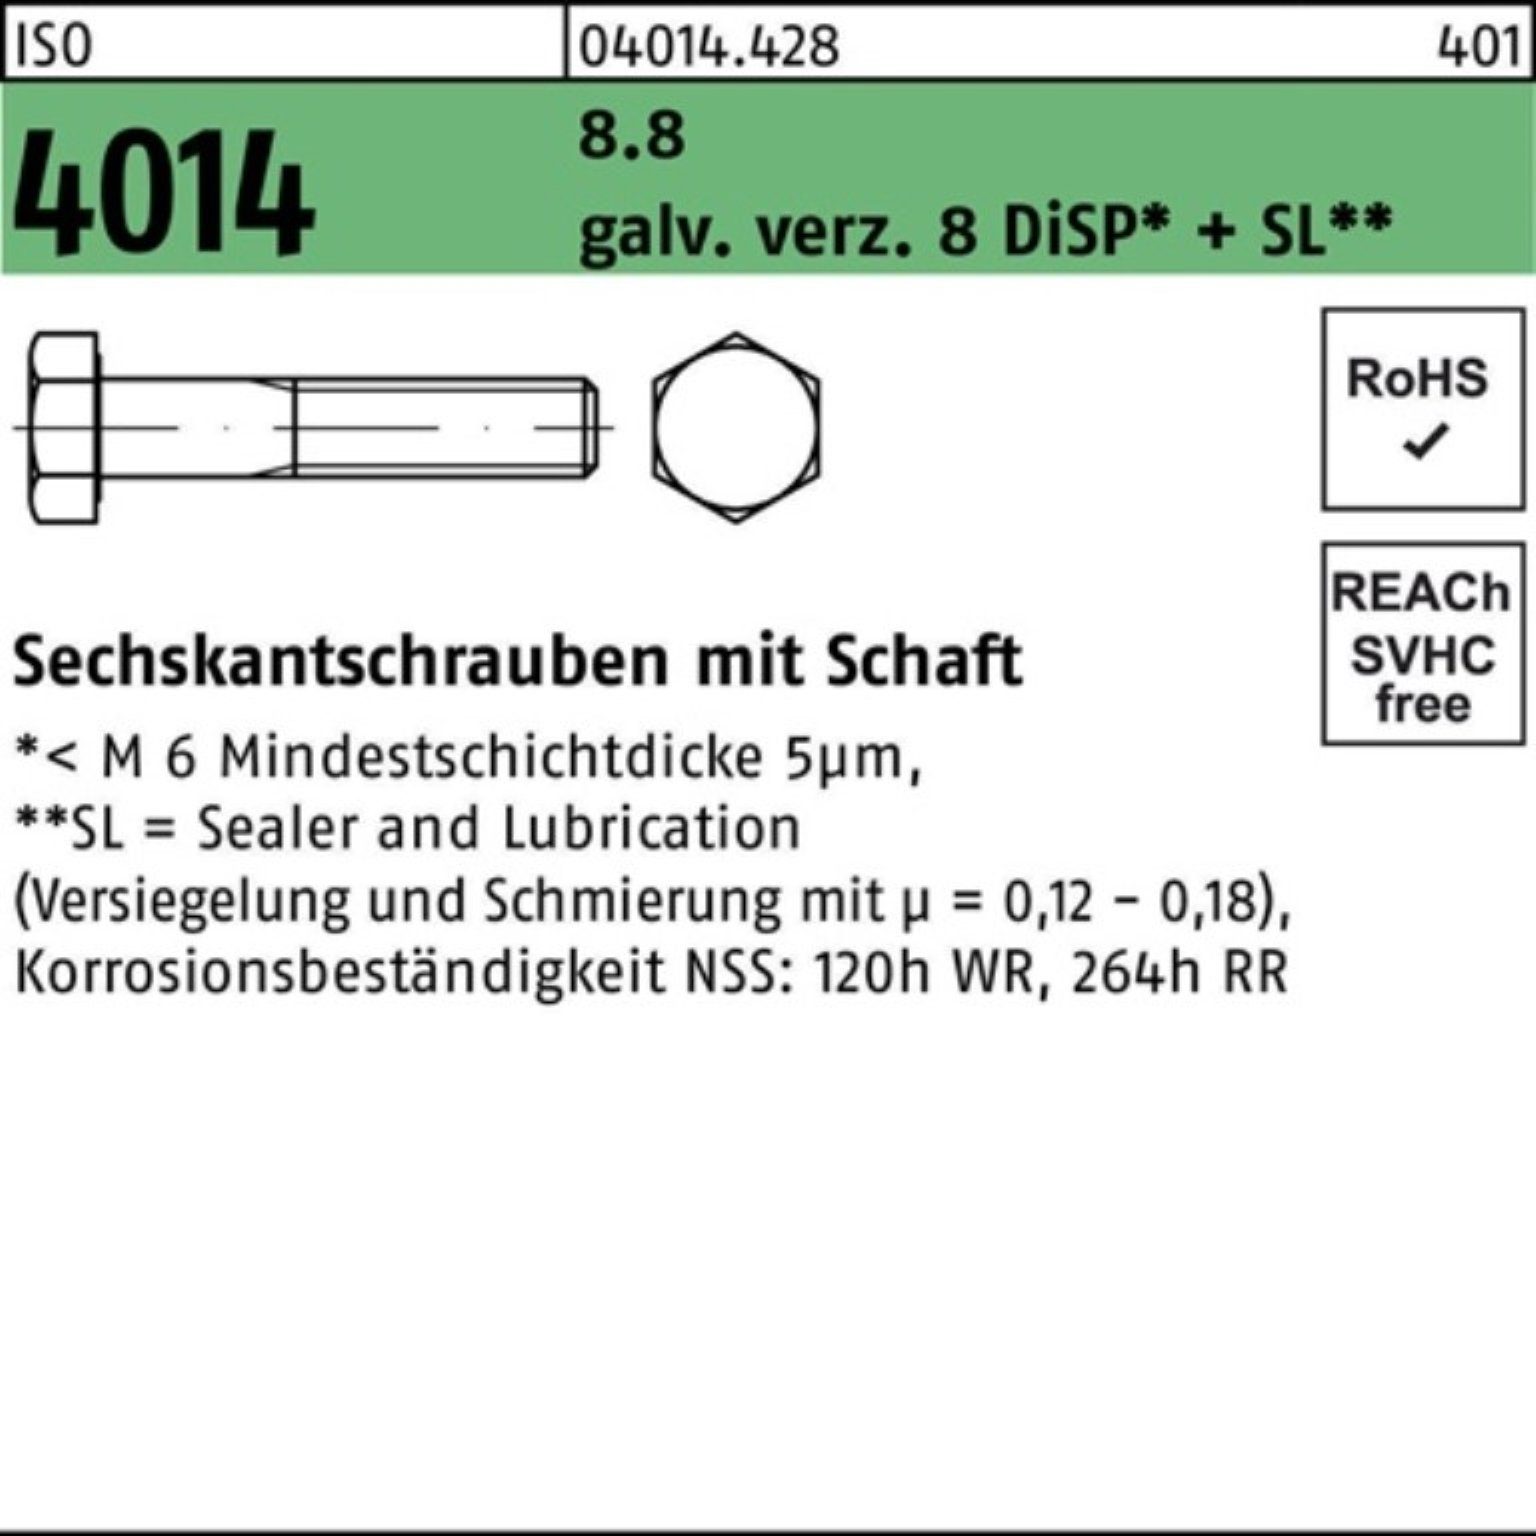 Bufab Sechskantschraube 100er Pack Sechskantschraube ISO 4014 Schaft M14x110 8.8 galv.verz. 8